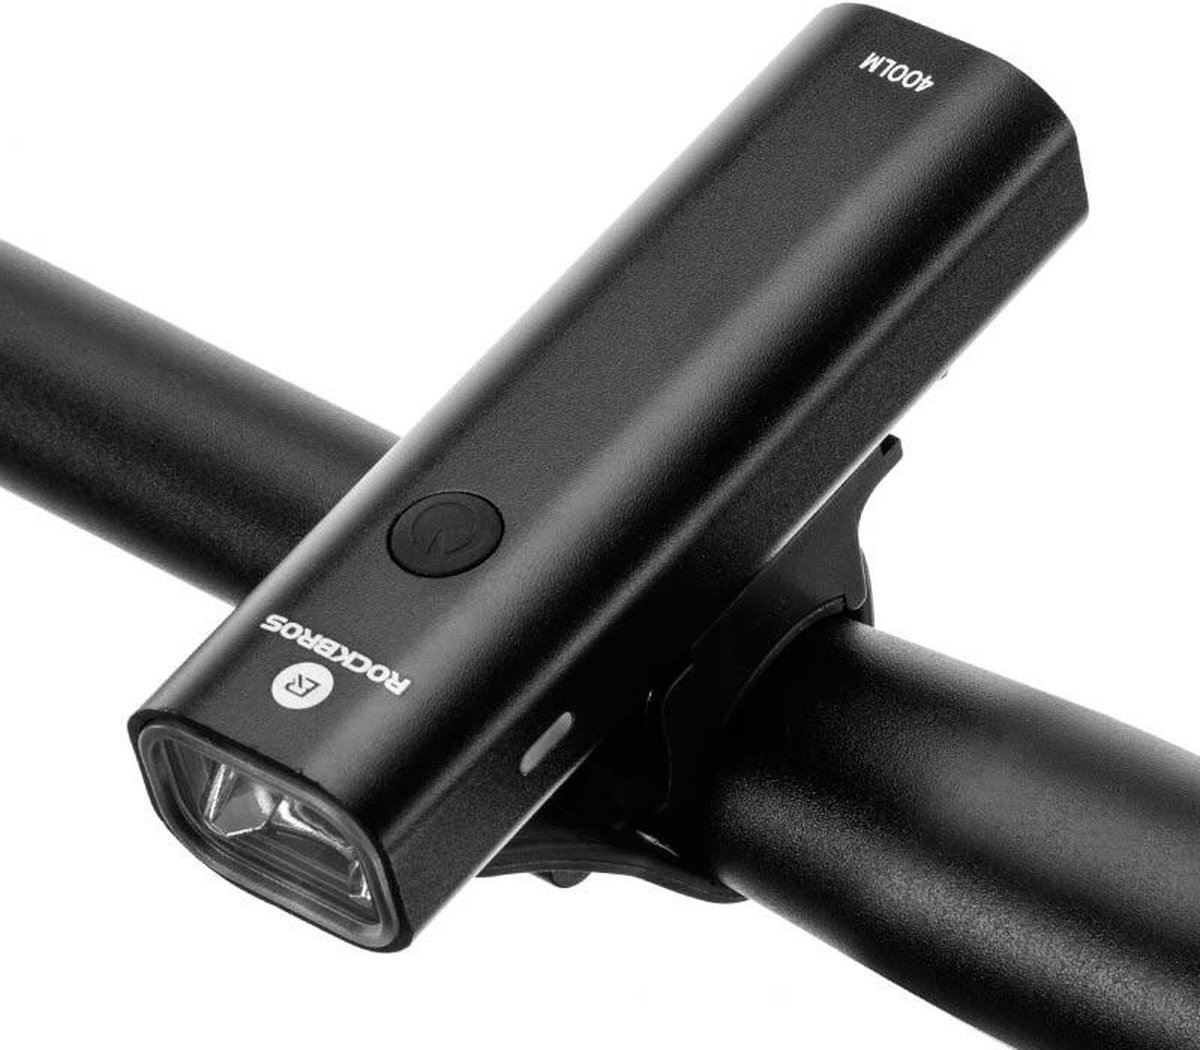 Fiets Koplamp 400Lumen USB Oplaadbare - IPX4 Waterbestendig - Fietsverlichting